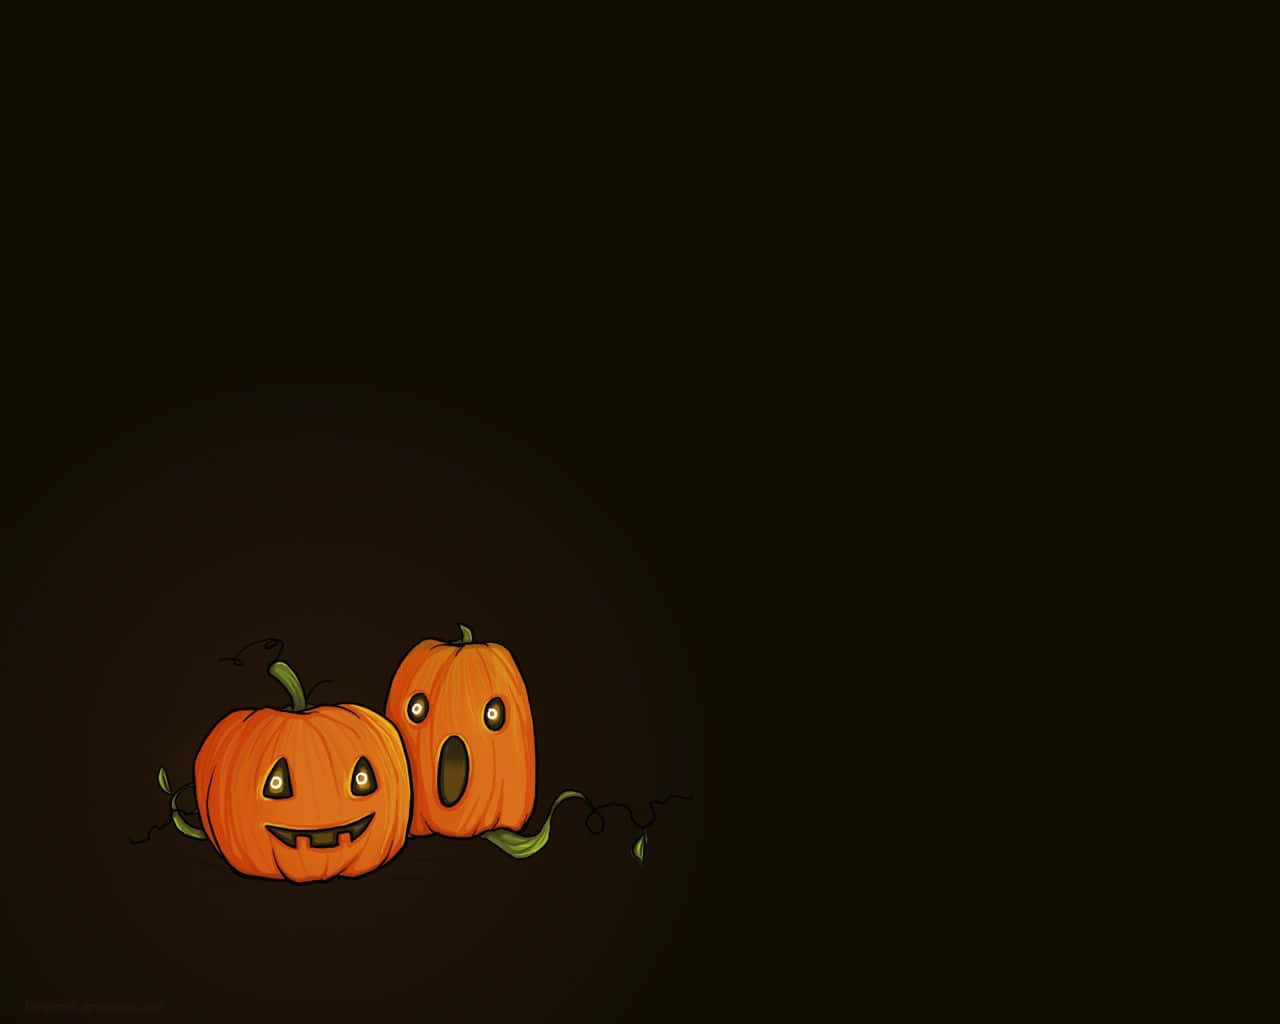 halloween pumpkins on a dark background